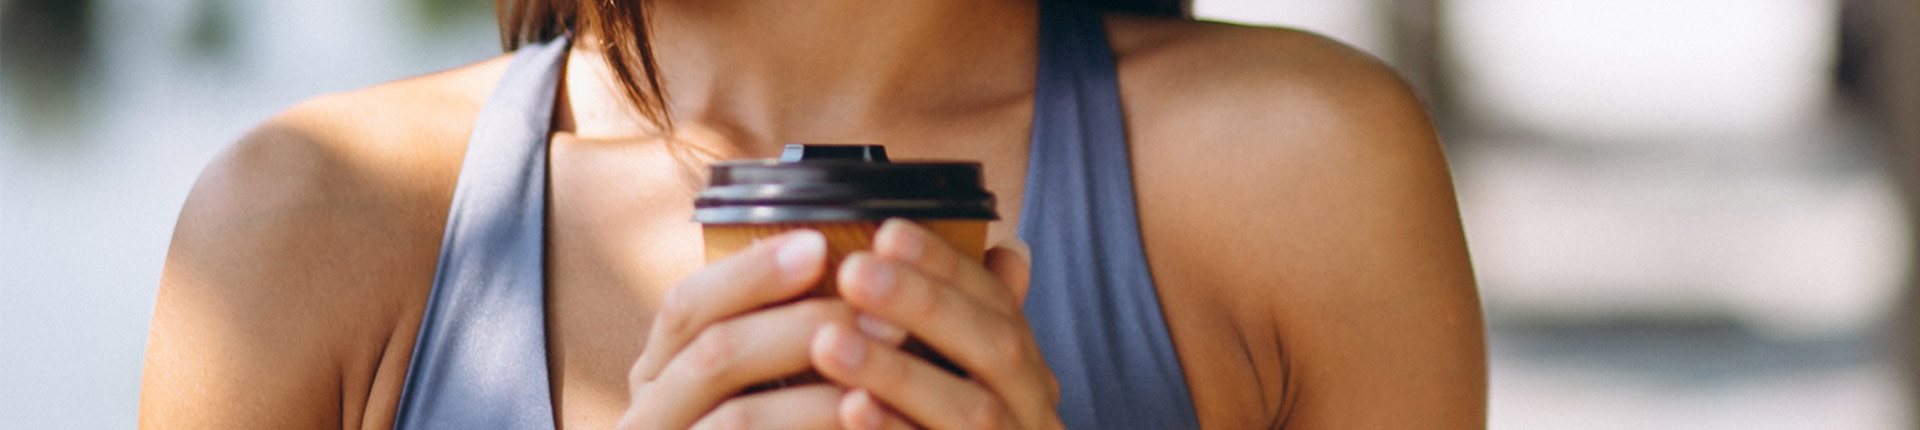 Czy kofeina działa na osoby i sportowców pijących kawę?